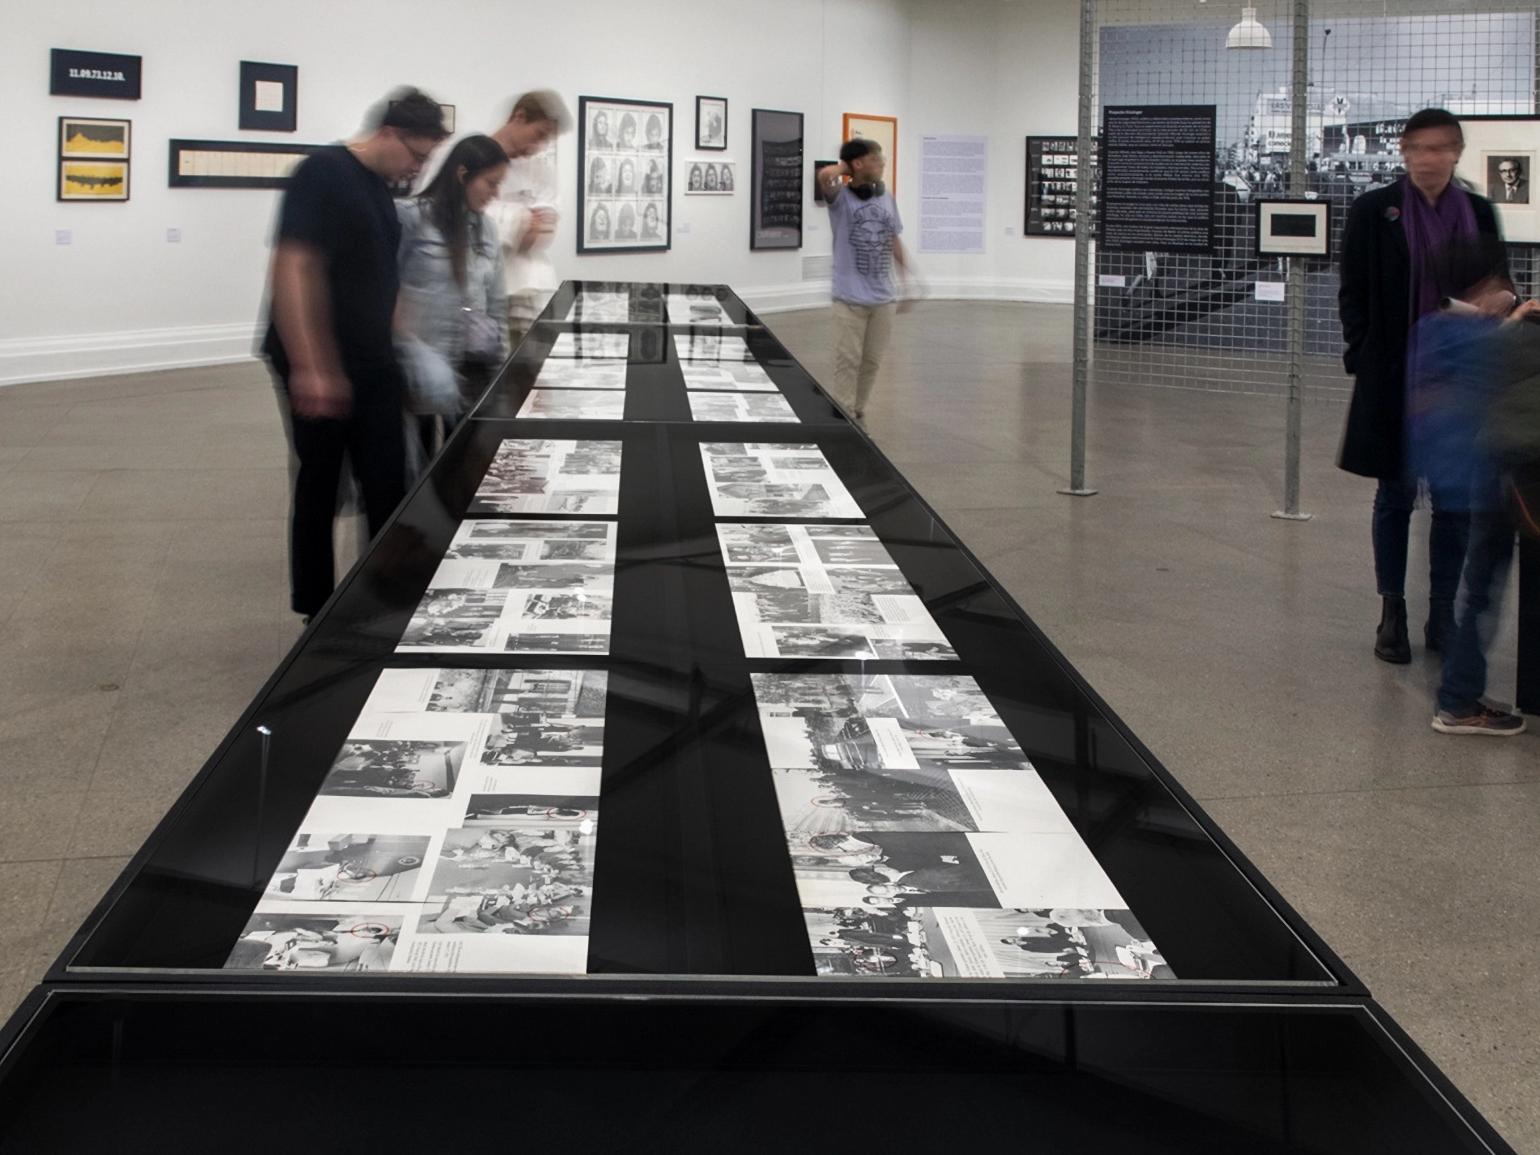 Fotografía de personas en una exposición, mirando un mesón con imágenes